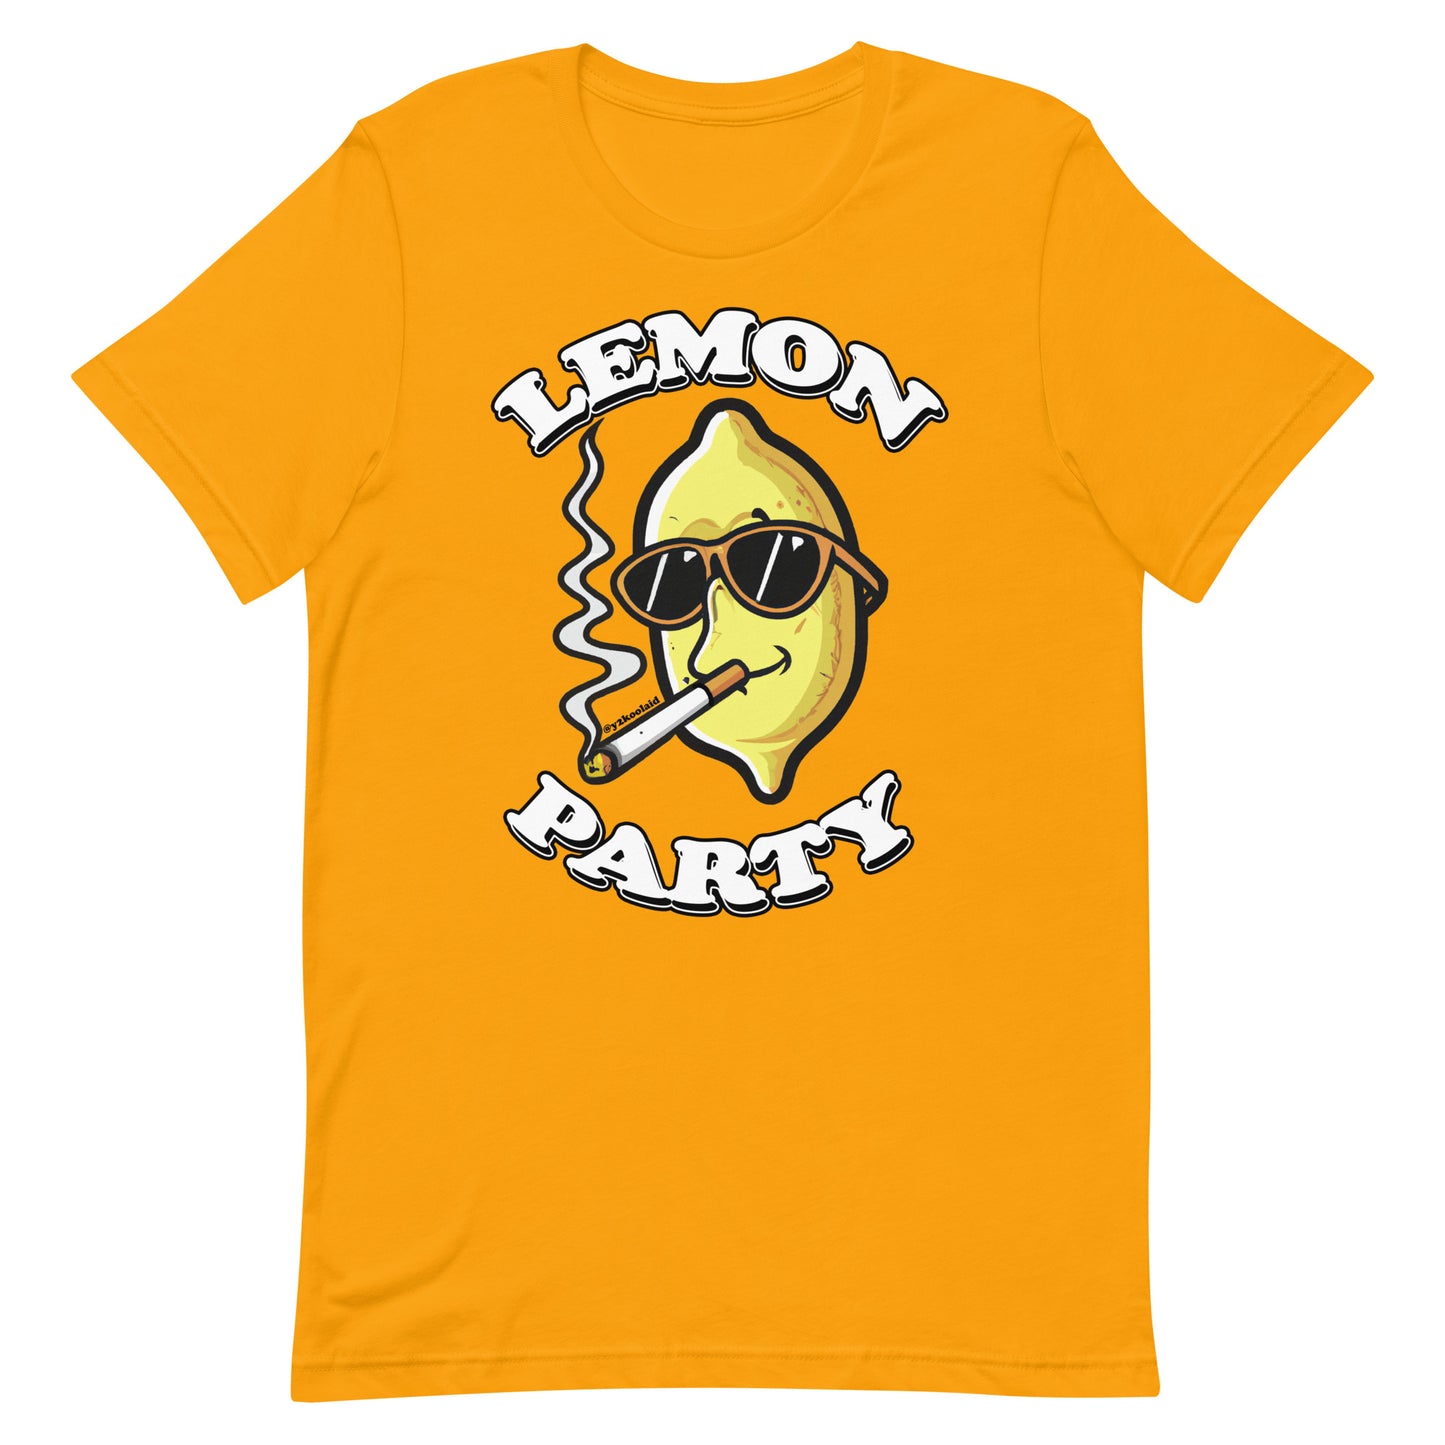 Lemon Party T-Shirt